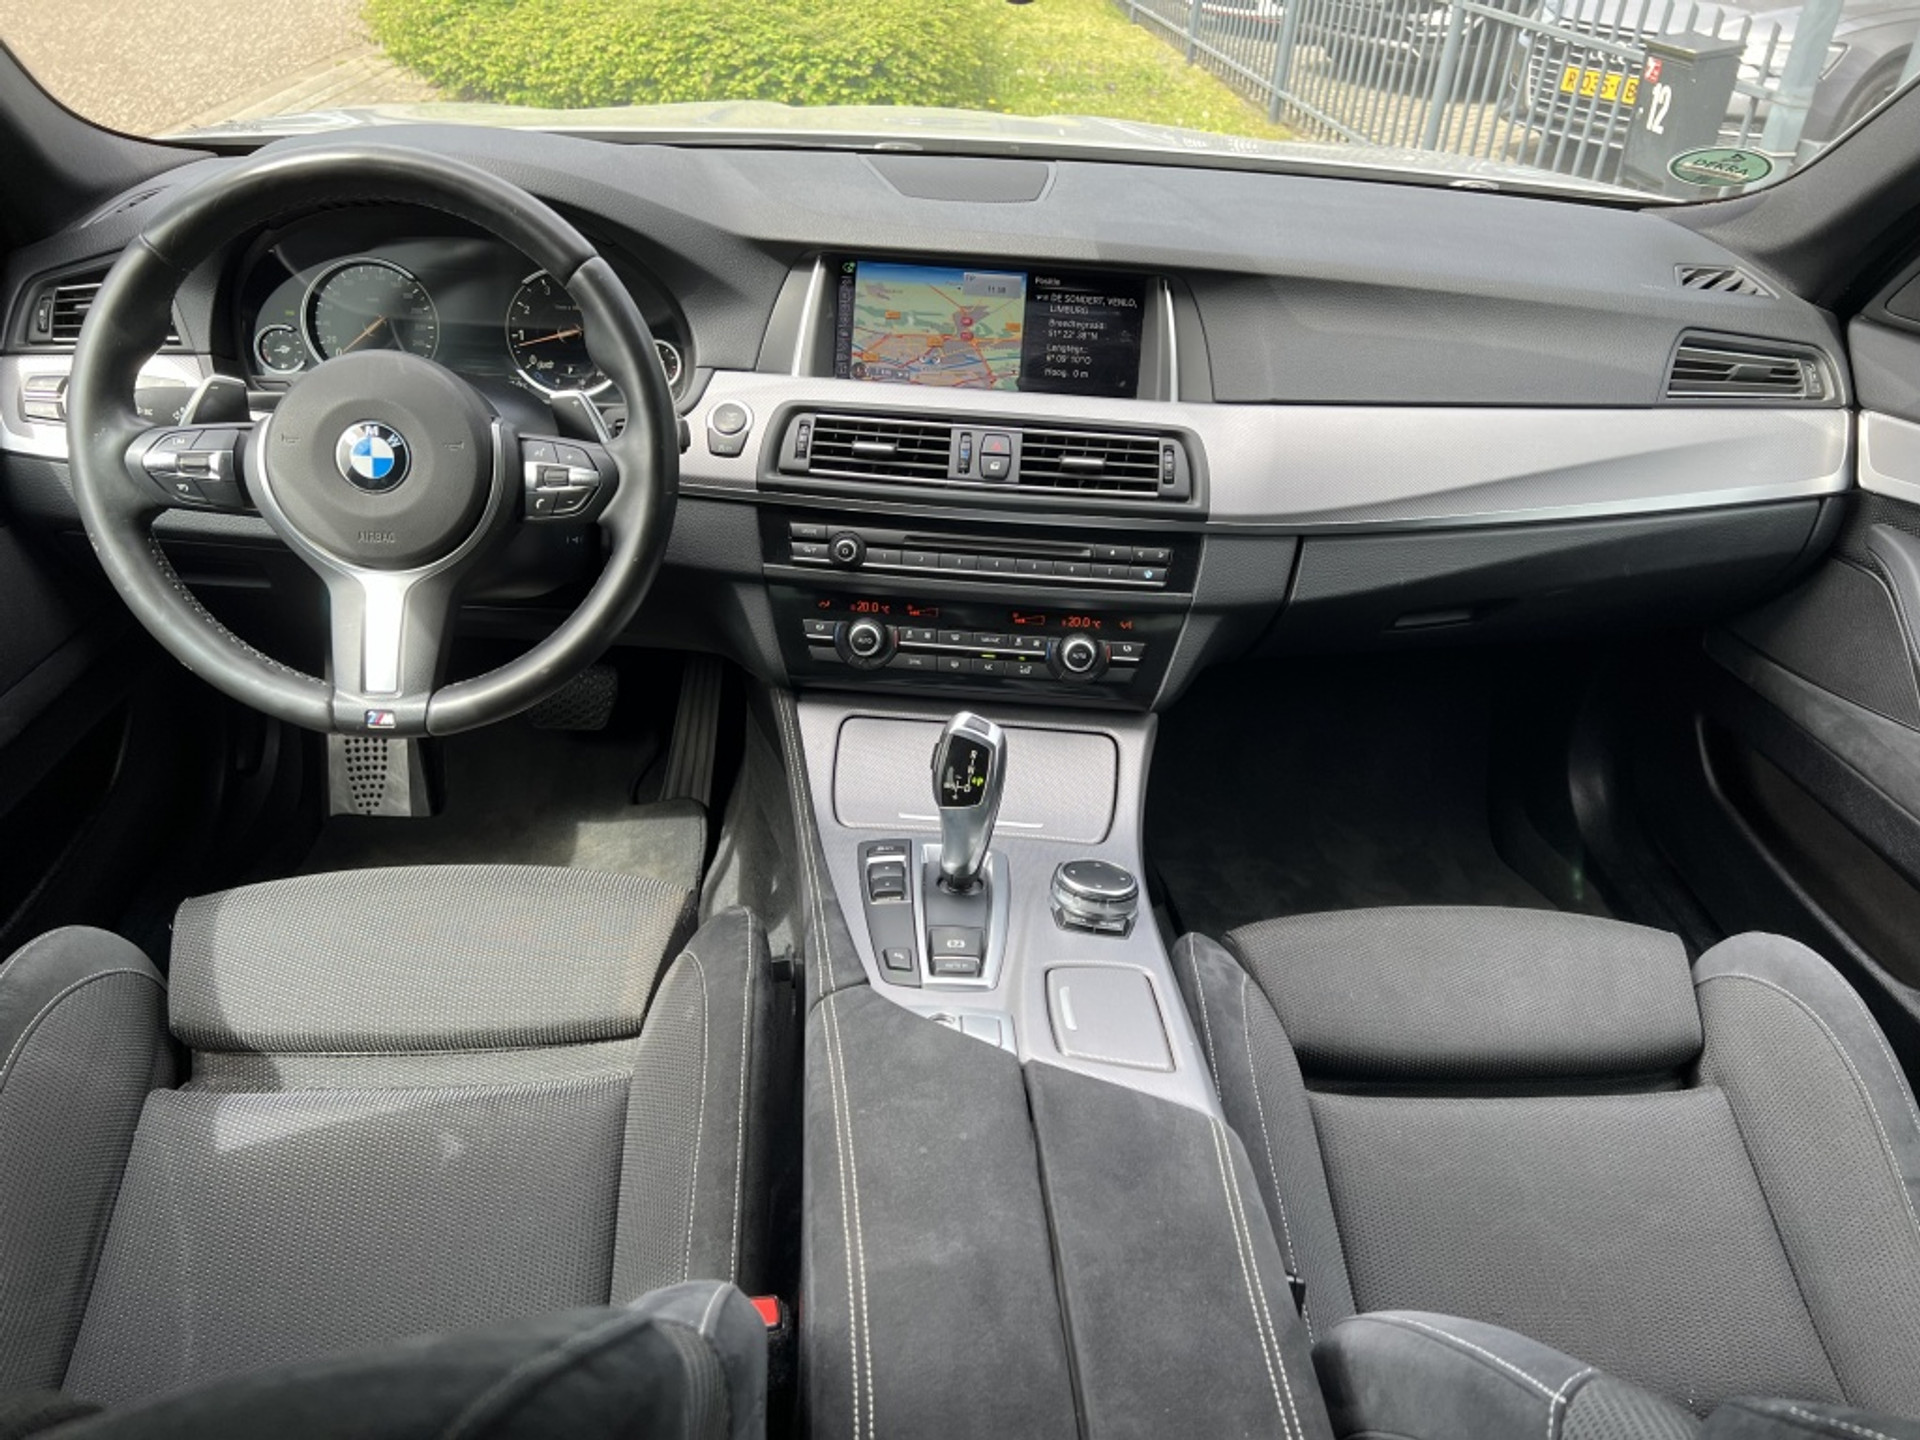 BMW 5 Serie JV-168-X